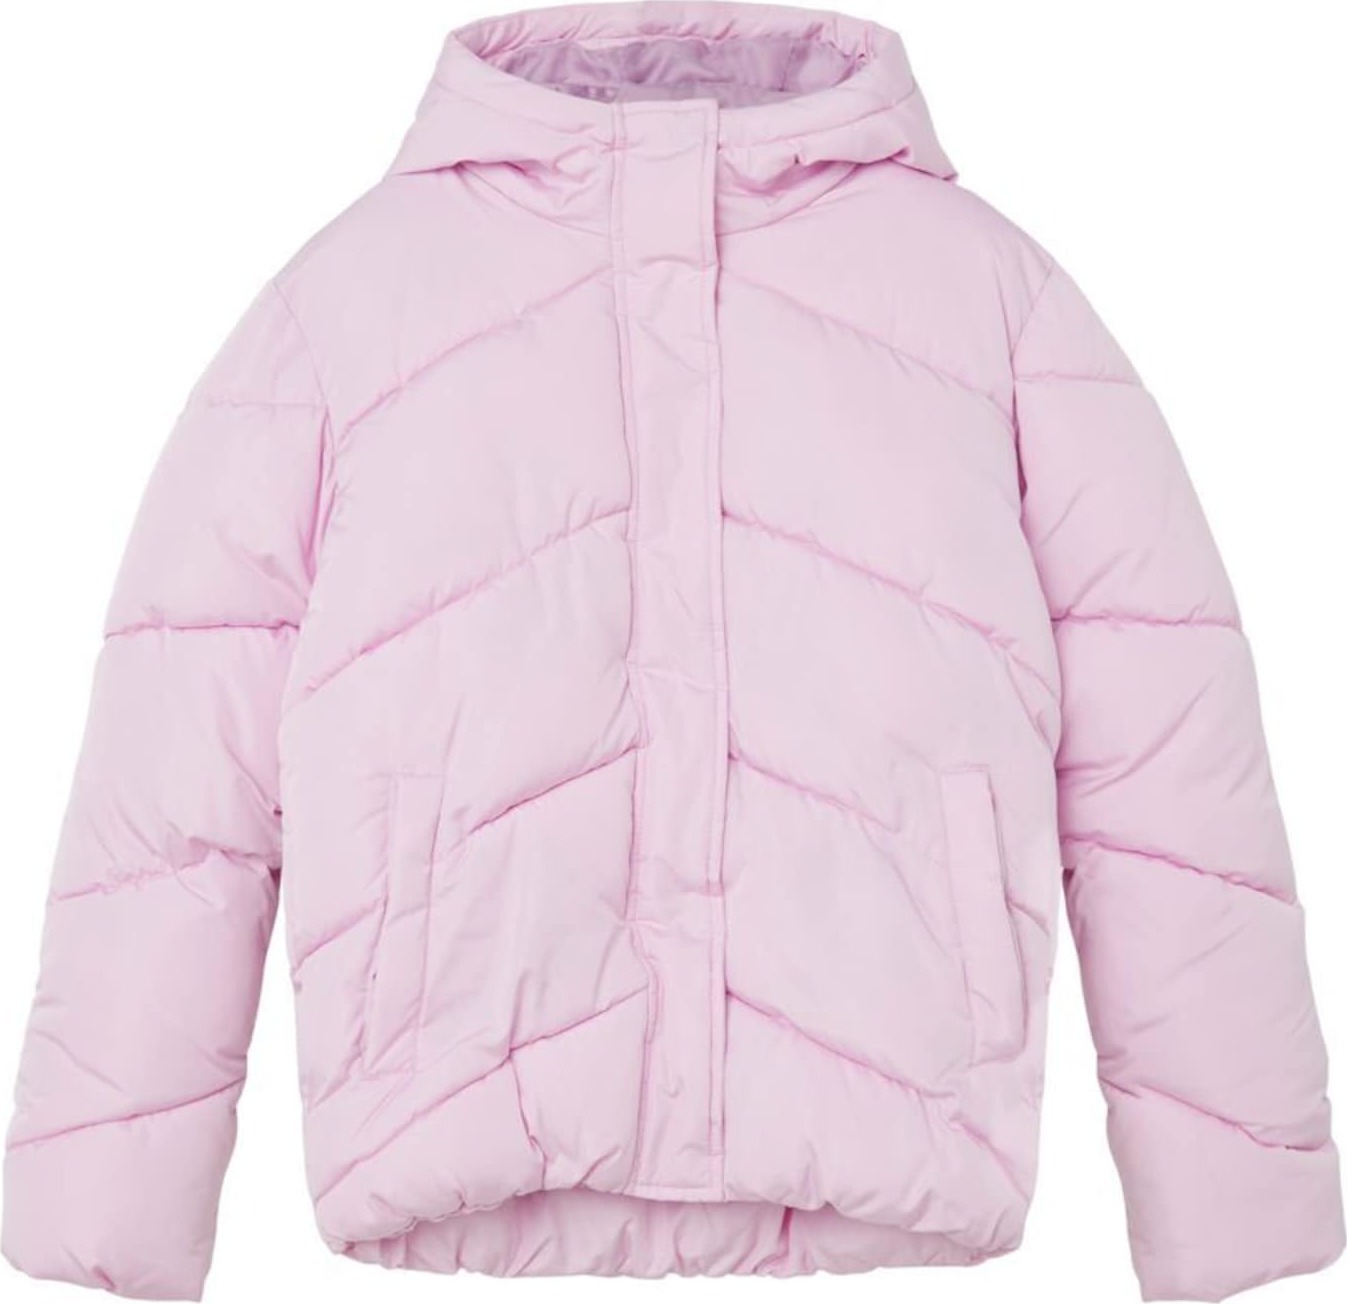 NAME IT Zimní bunda světle růžová